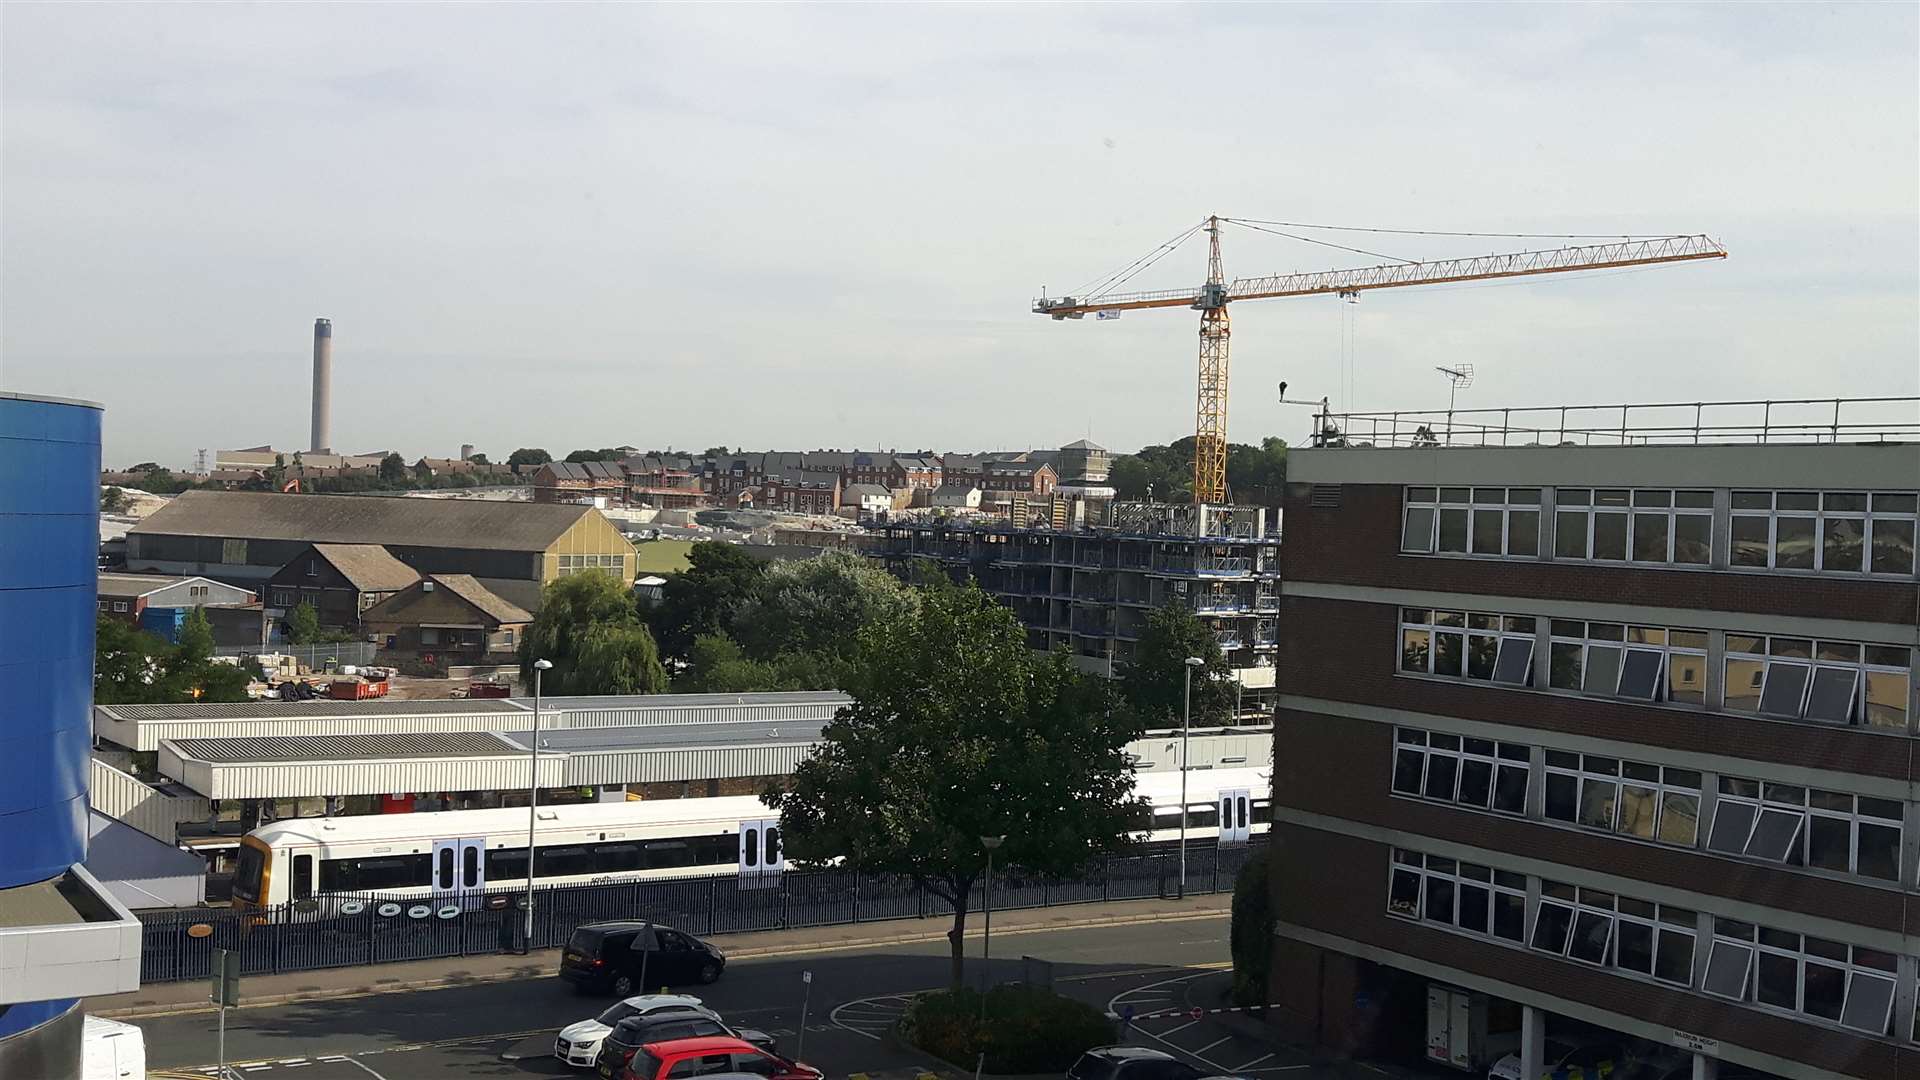 Cranes are a familiar sight in Dartford as more developments come on stream